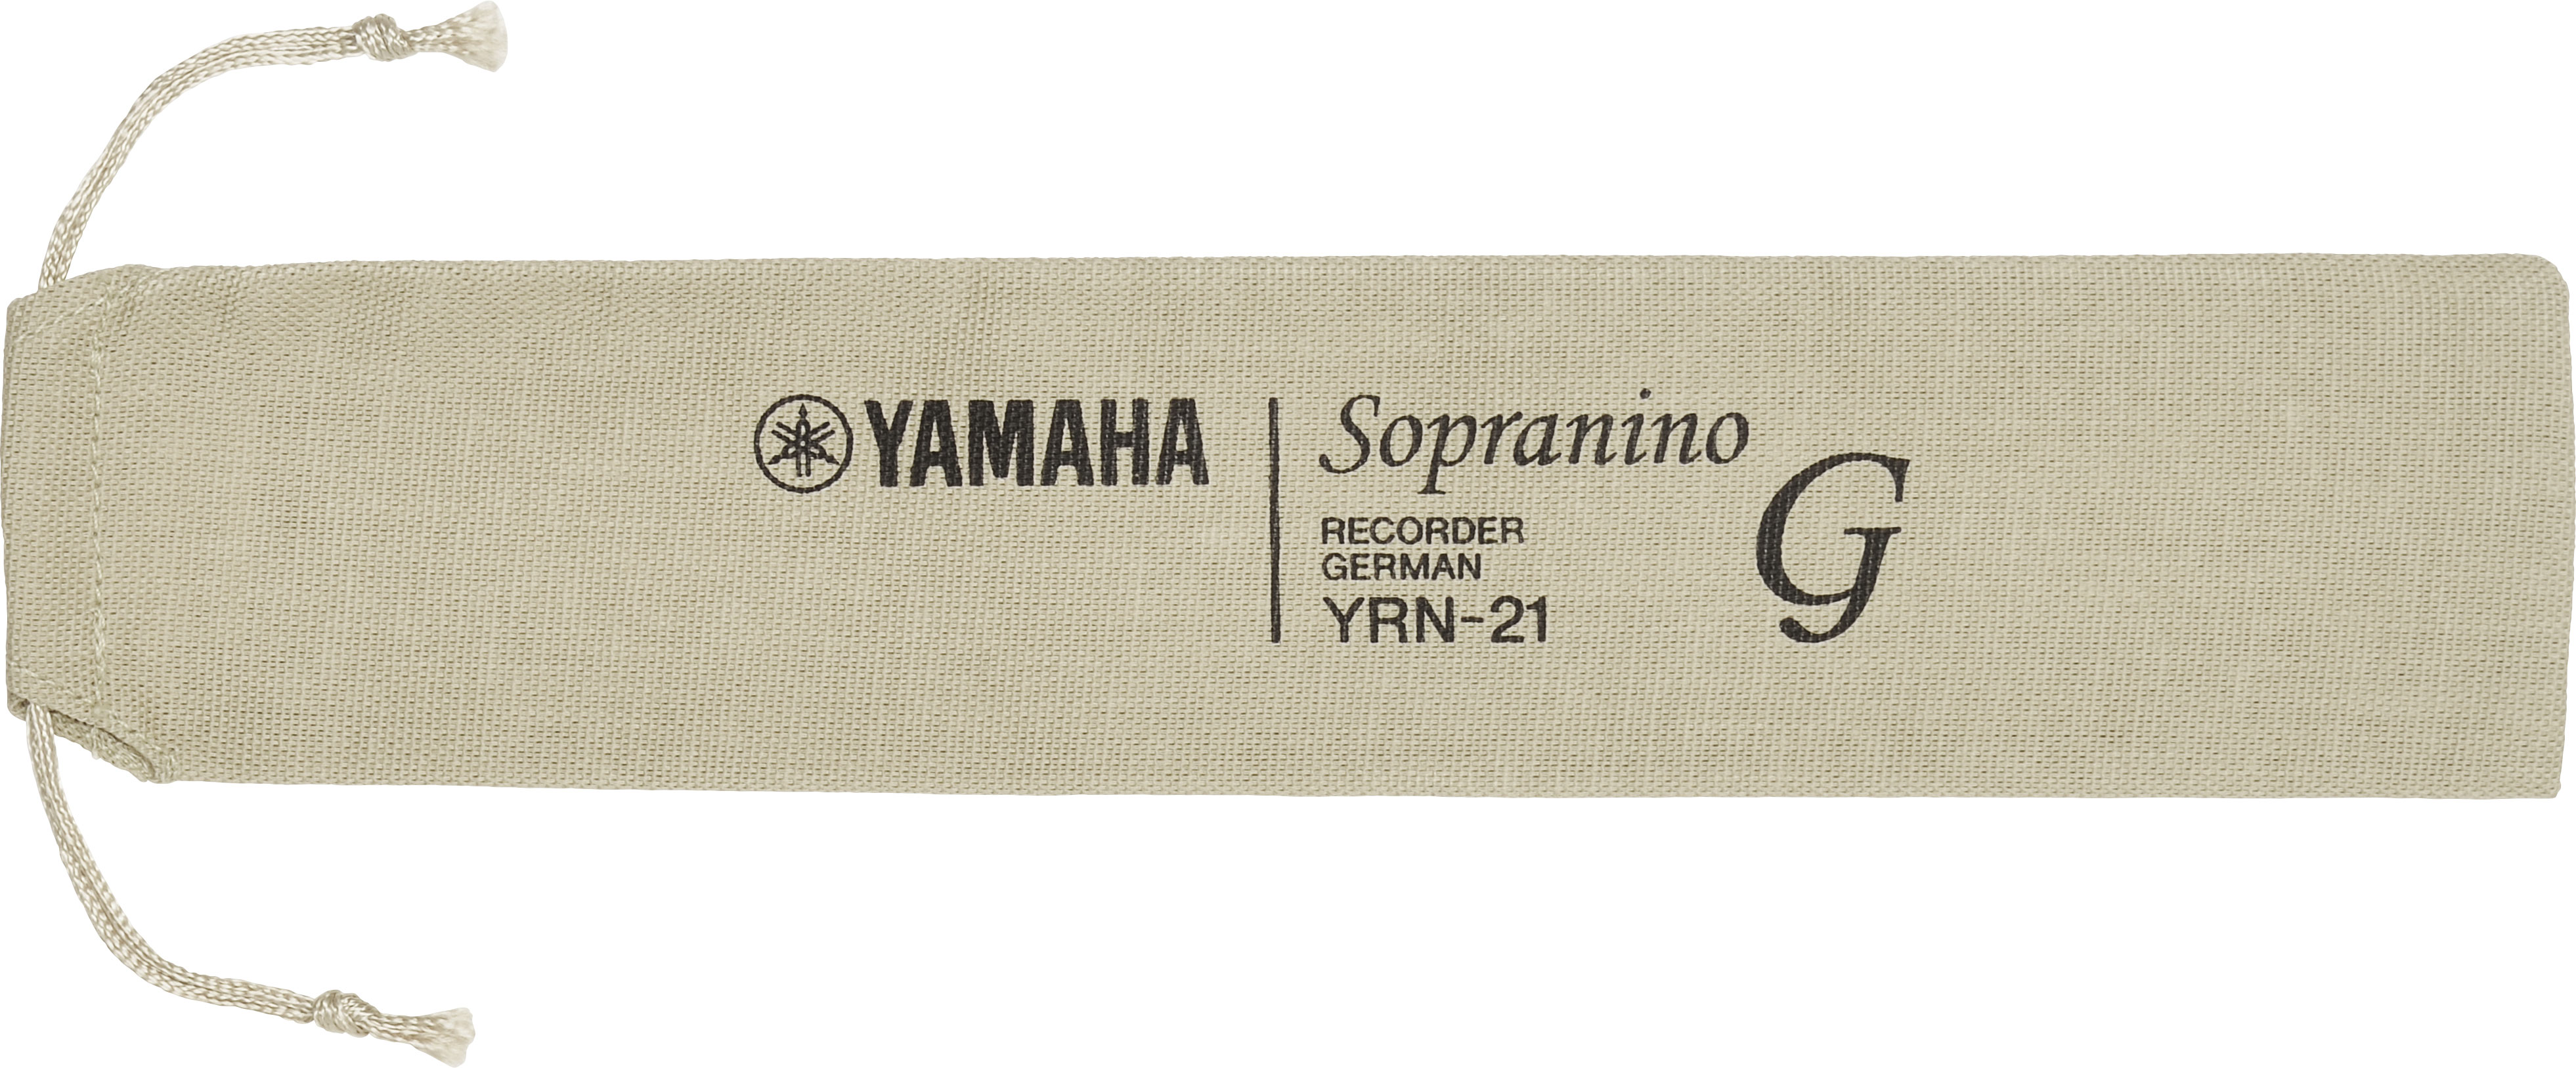 Yamaha Sopranino Recorder - YRN 21